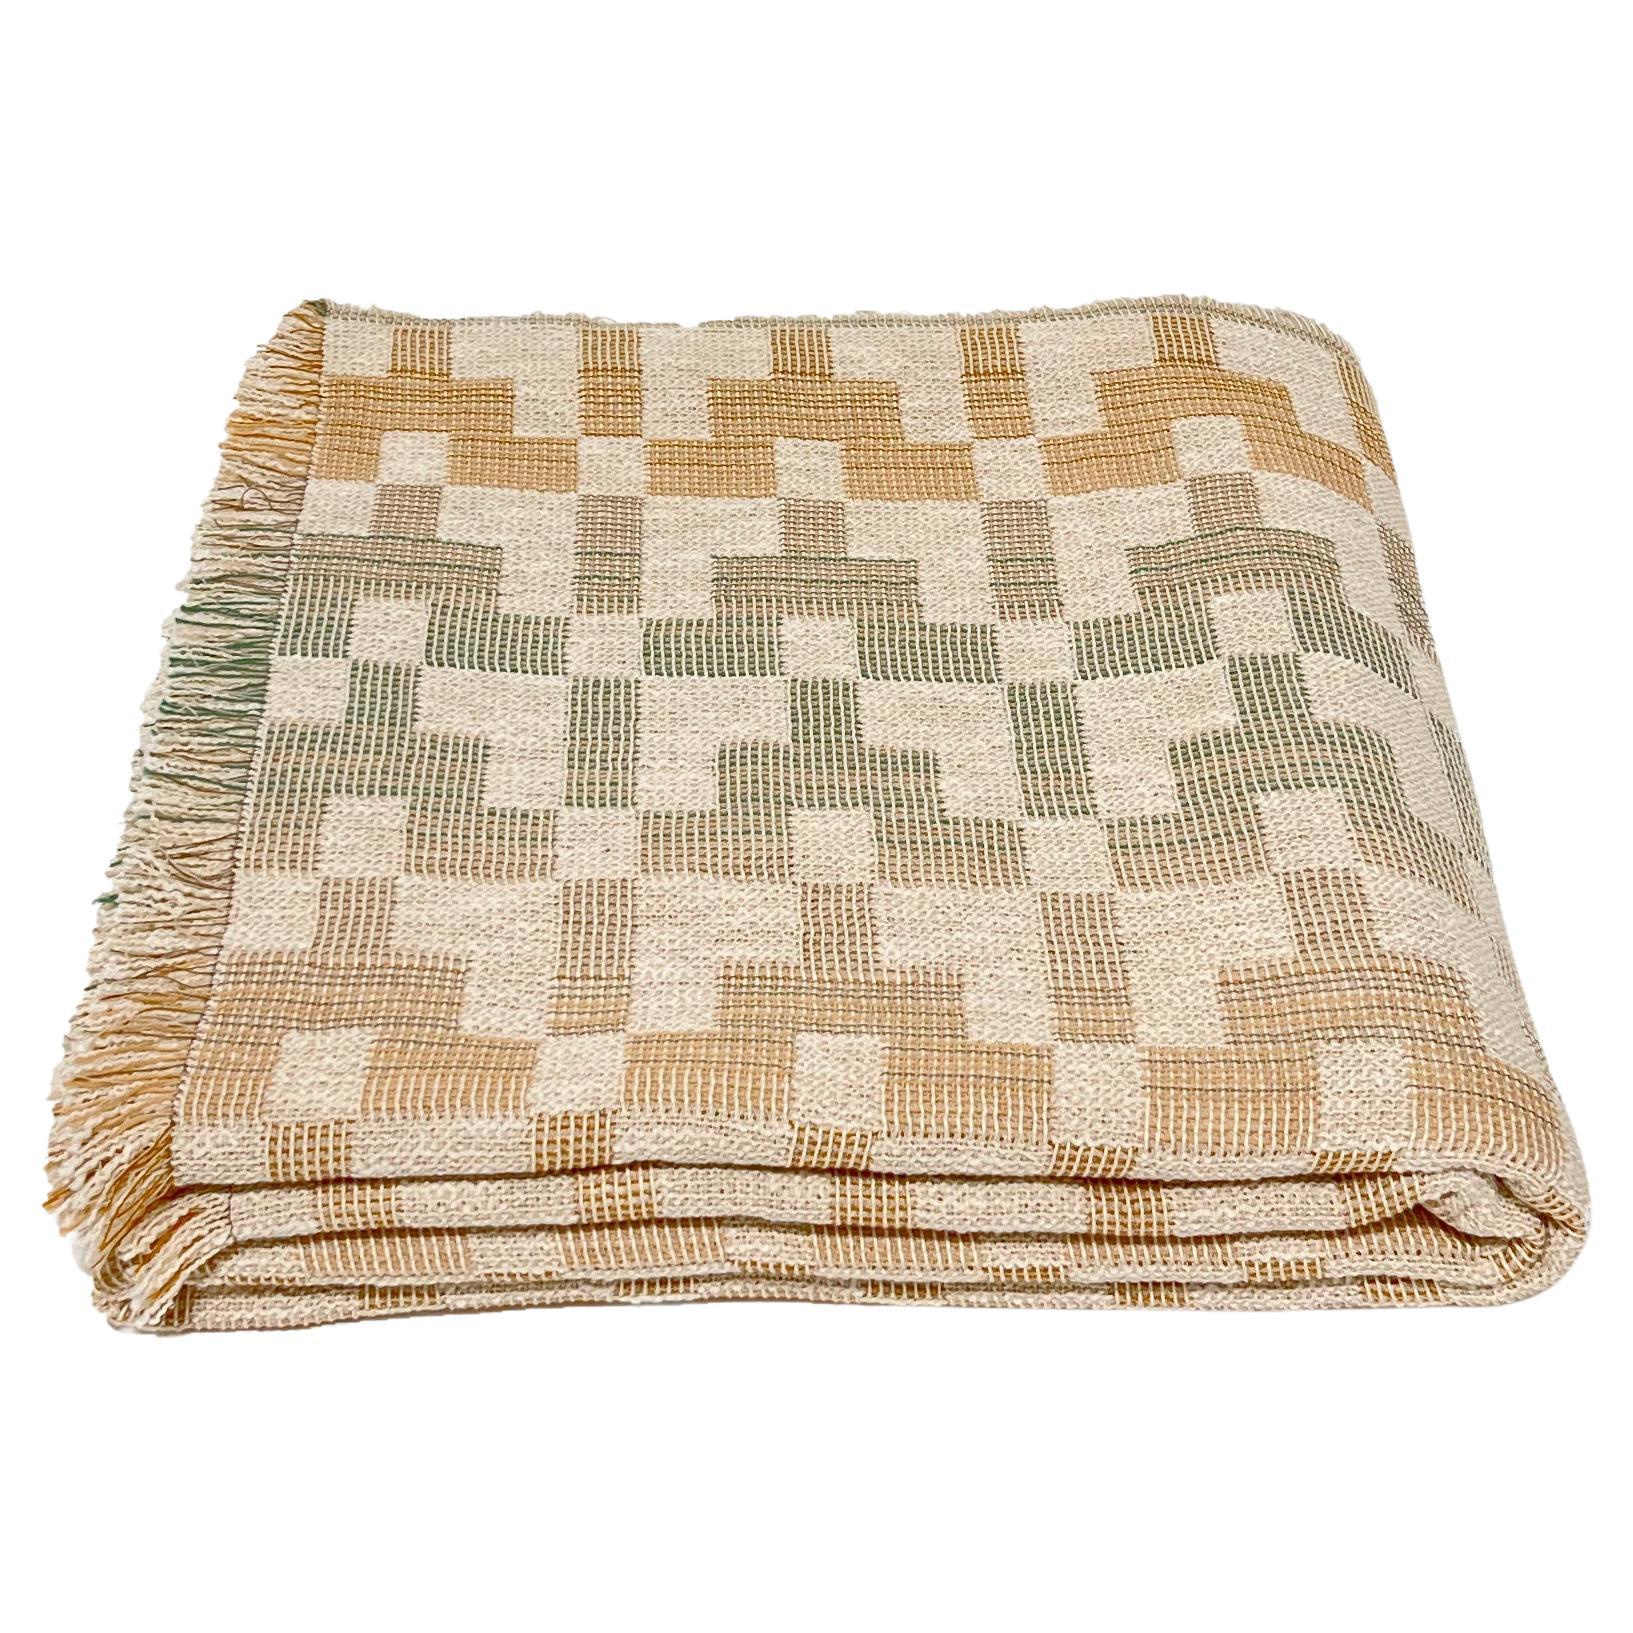 Gemustertes Bettgestell aus gewebter Baumwolle von Folk Textiles (Esme / Fade)